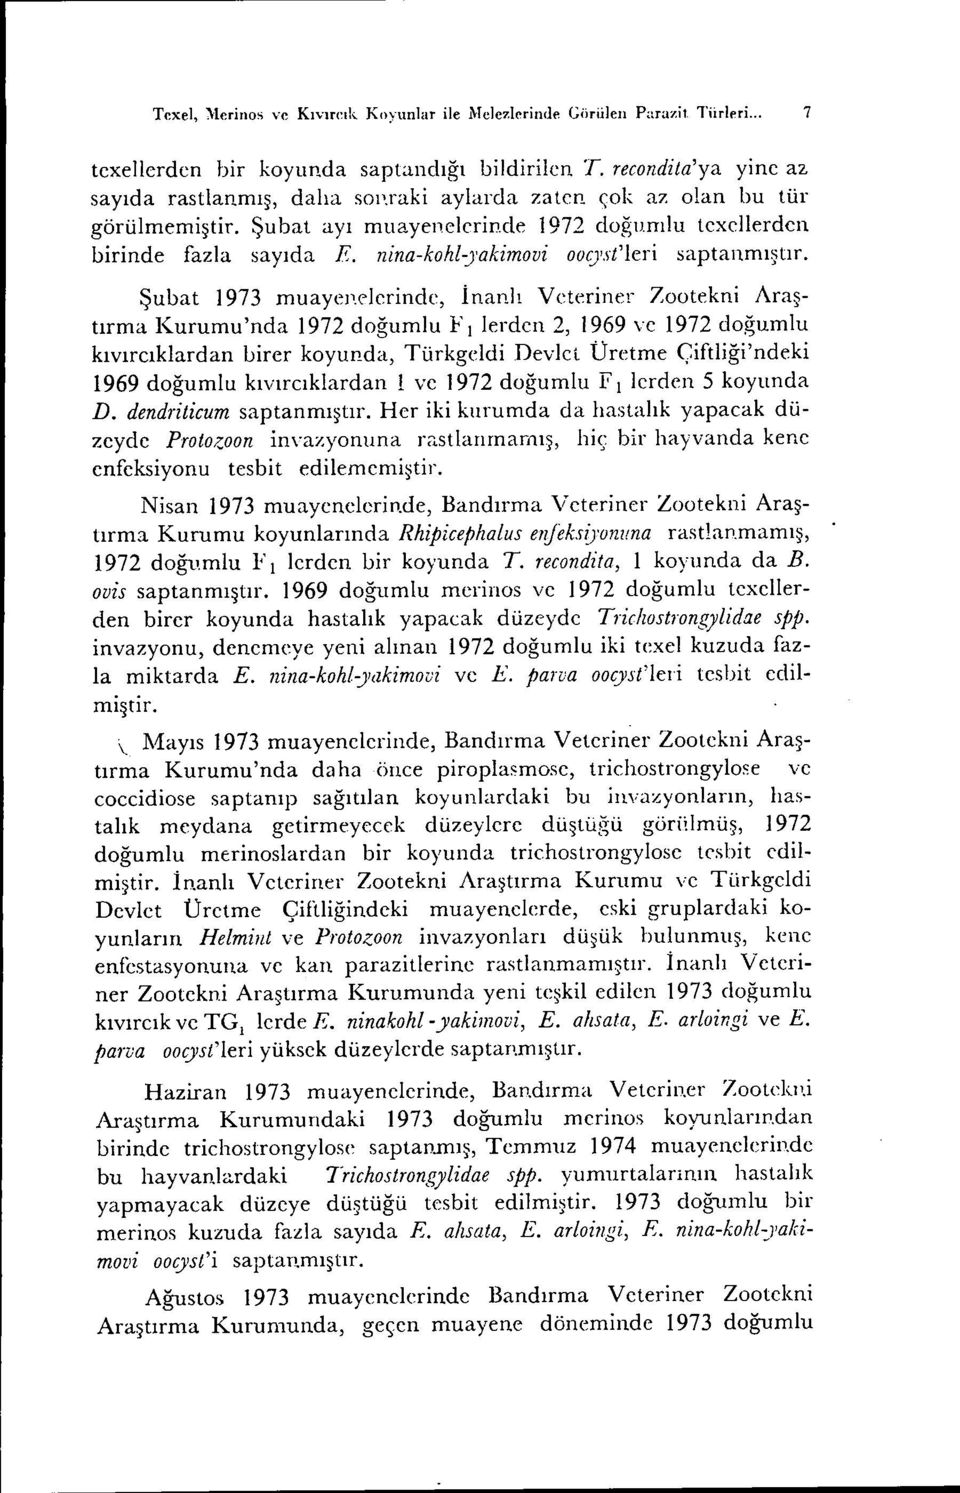 Şubat 1973 muayenelerinde, İnanlı V deriner Zootekni Araştırma Kurumu'nda 1972 doğumlu Fı lerden 2, 1969 ve 1972 doğumlu kıvırcıklardan Lirer koyud.